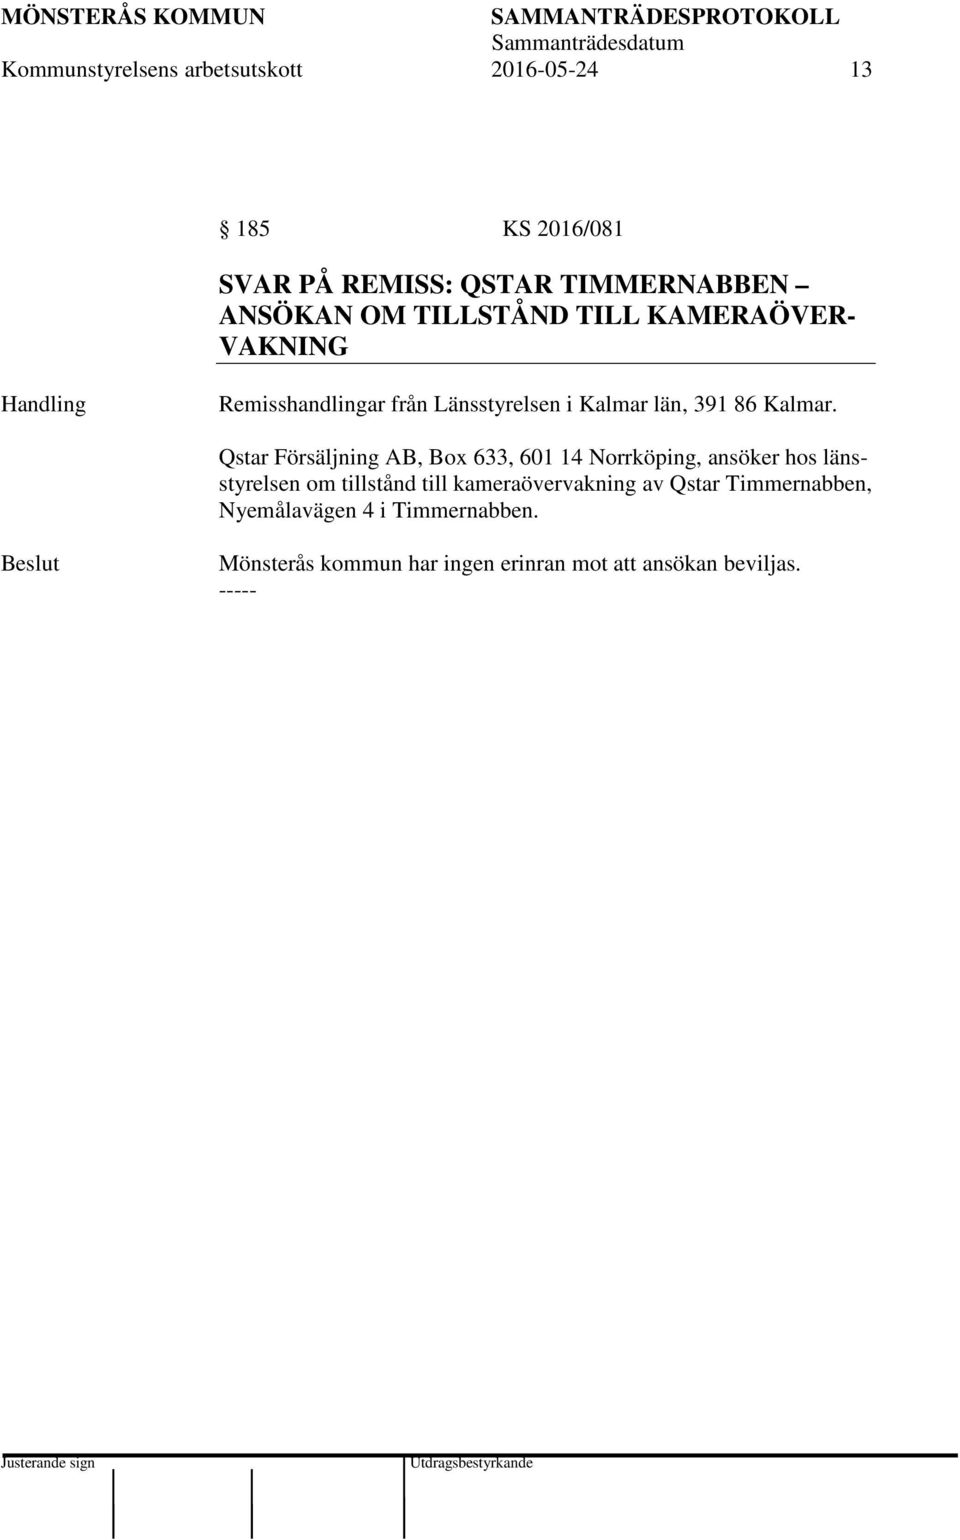 Qstar Försäljning AB, Box 633, 601 14 Norrköping, ansöker hos länsstyrelsen om tillstånd till